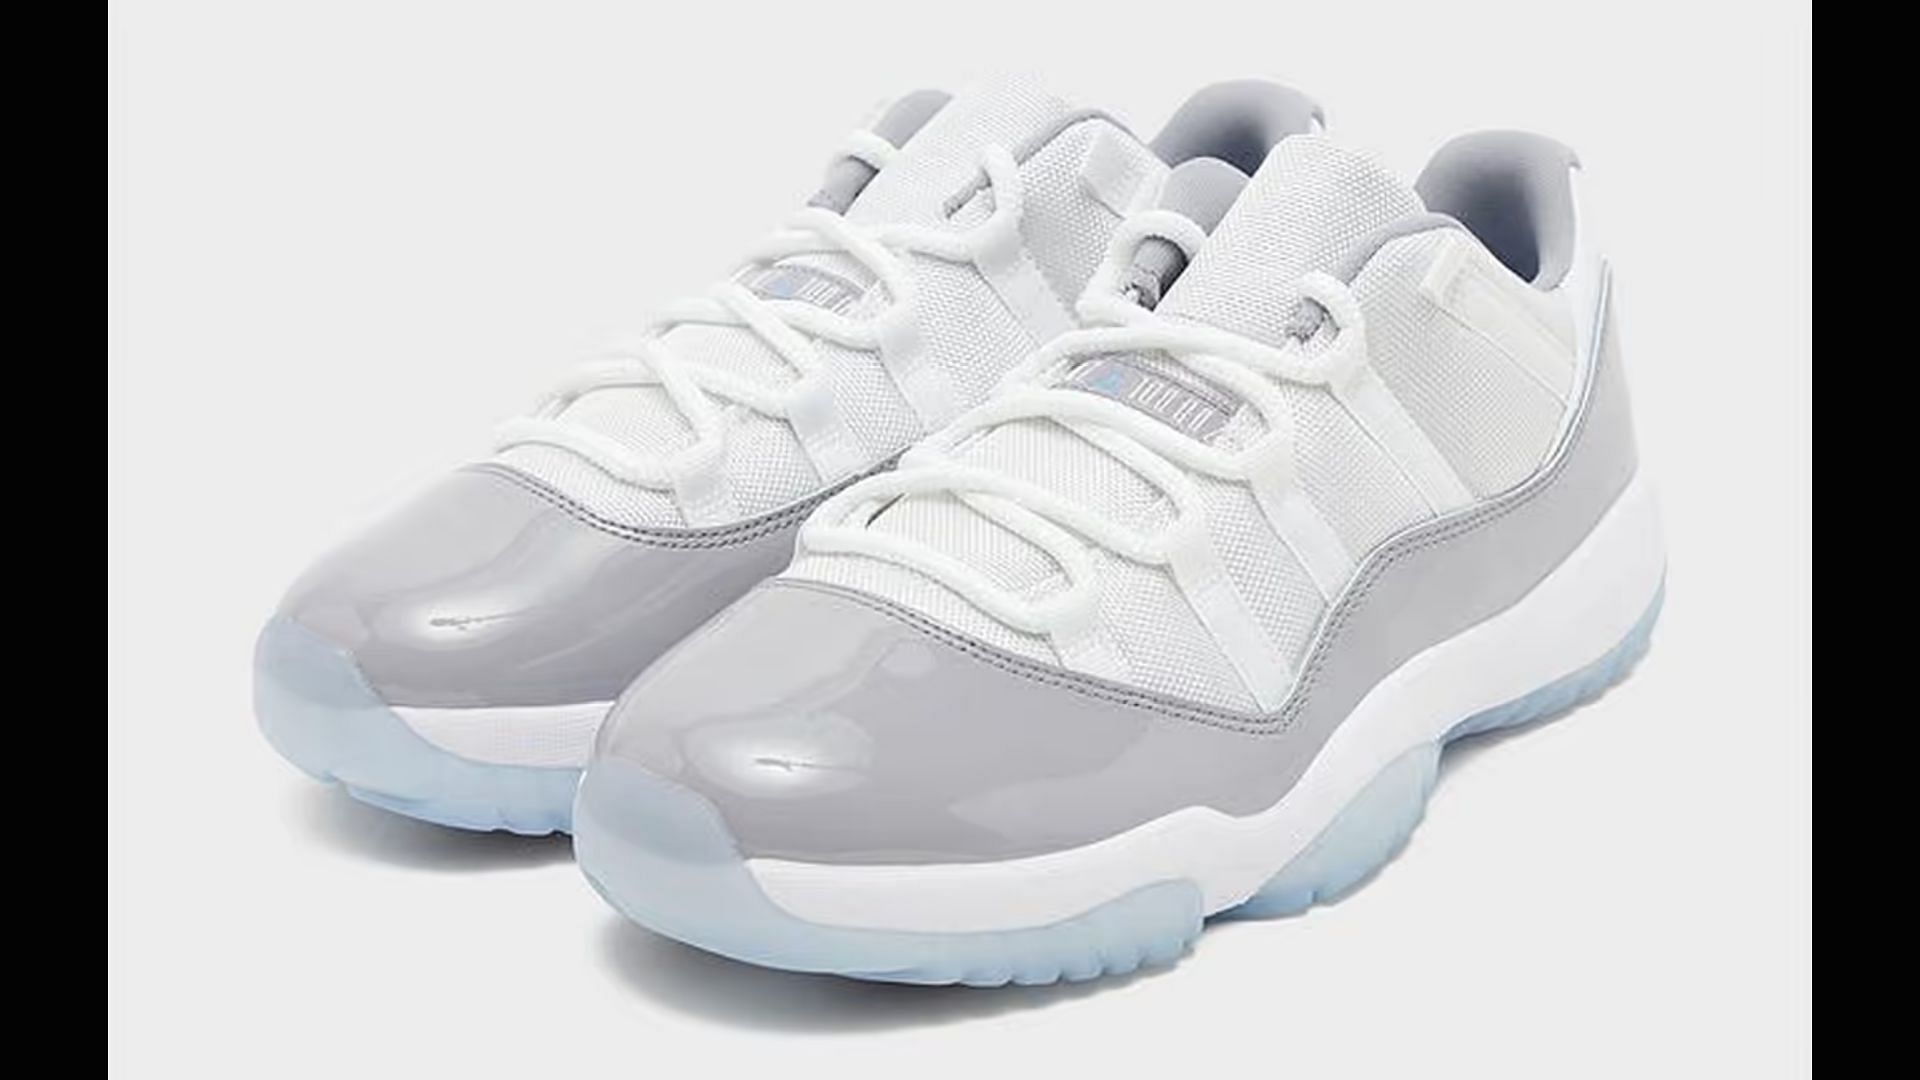 Air Jordan 11 Low &quot;Cement Grey&quot; (Image via Nike)